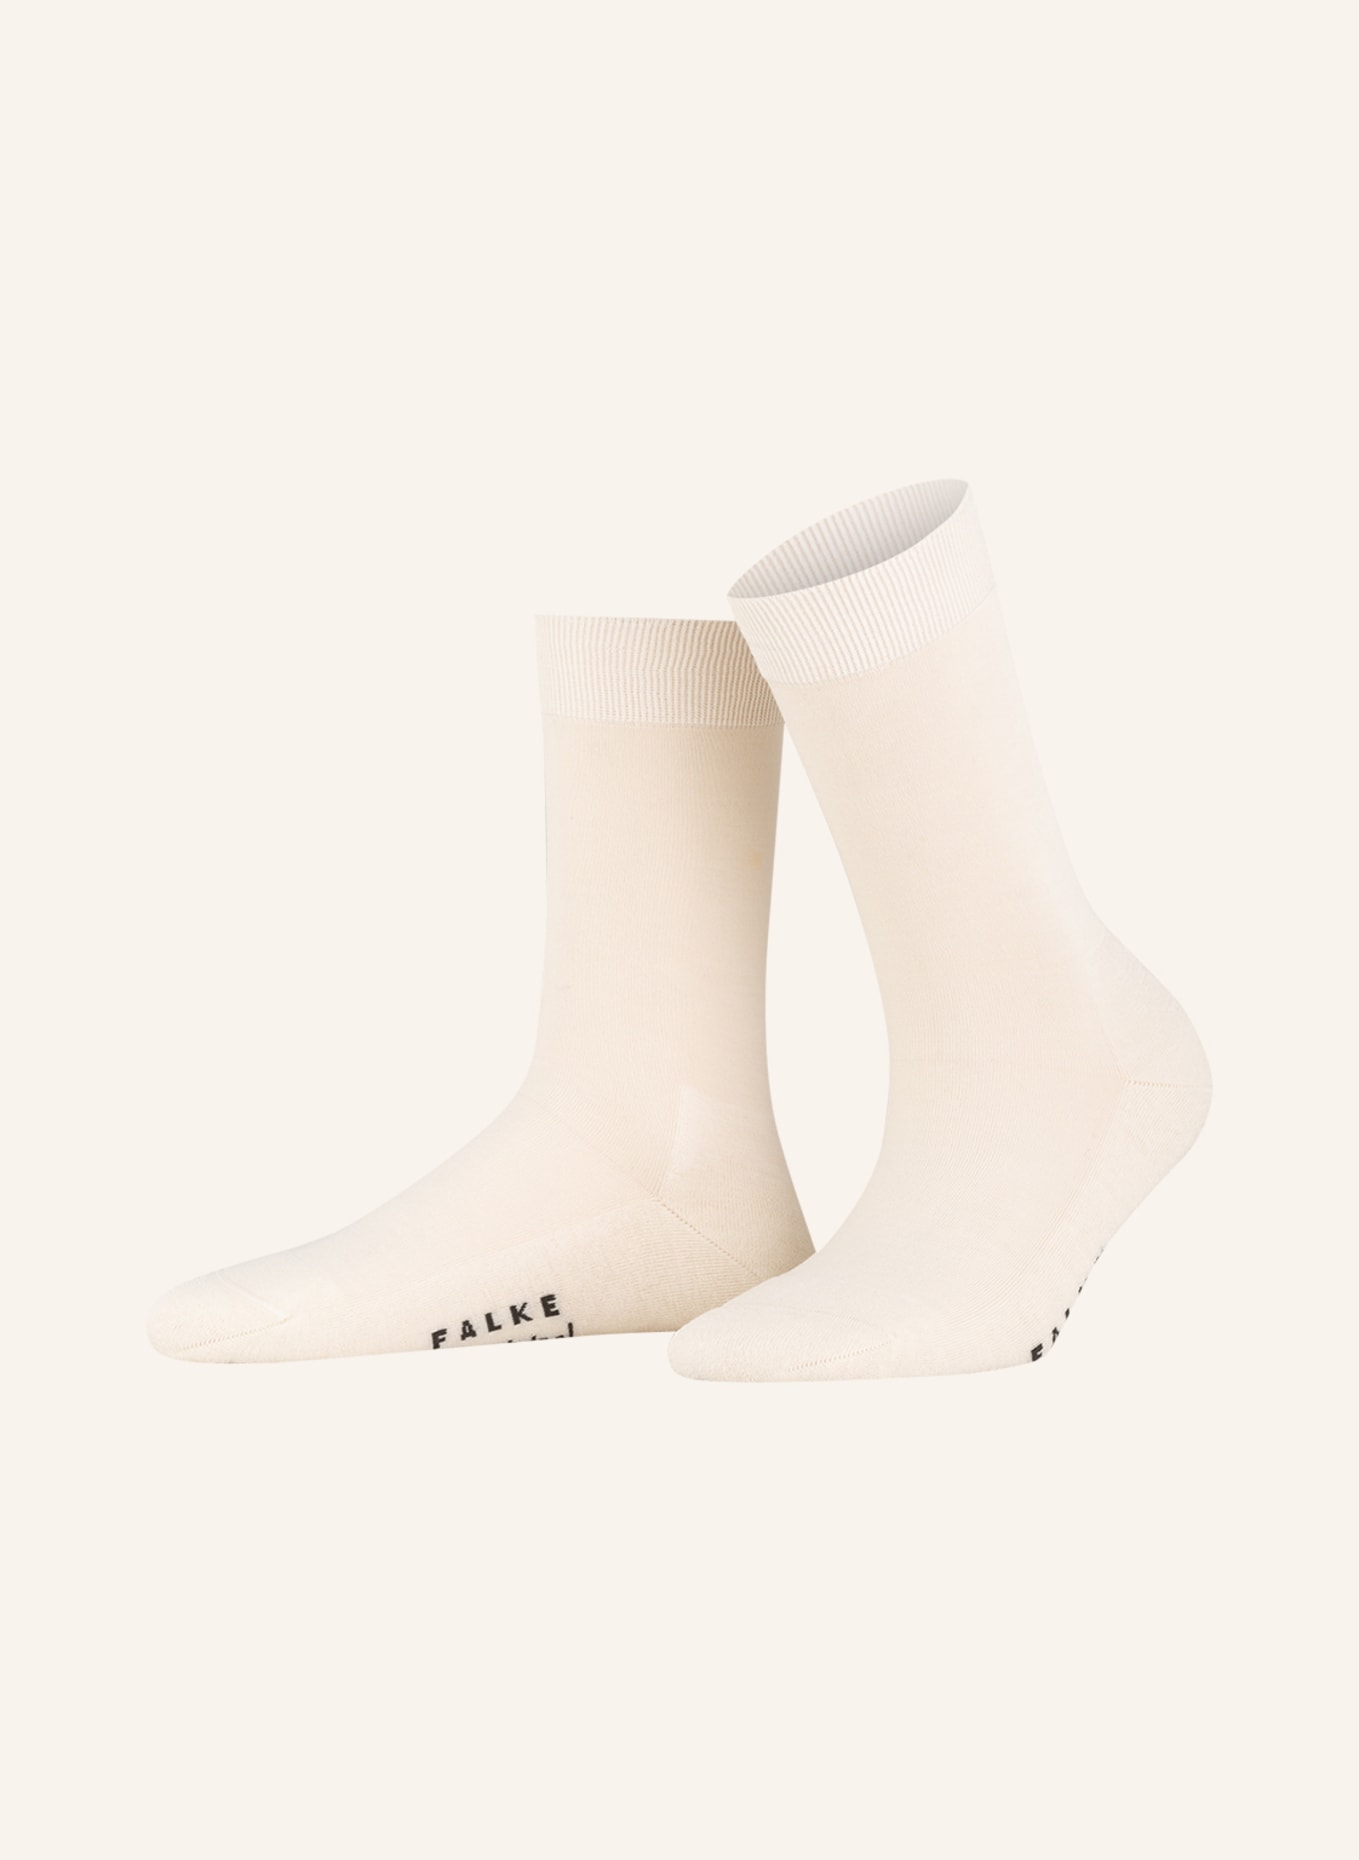 FALKE Socken CLIMAWOOL , Farbe: 2040 off-white (Bild 1)